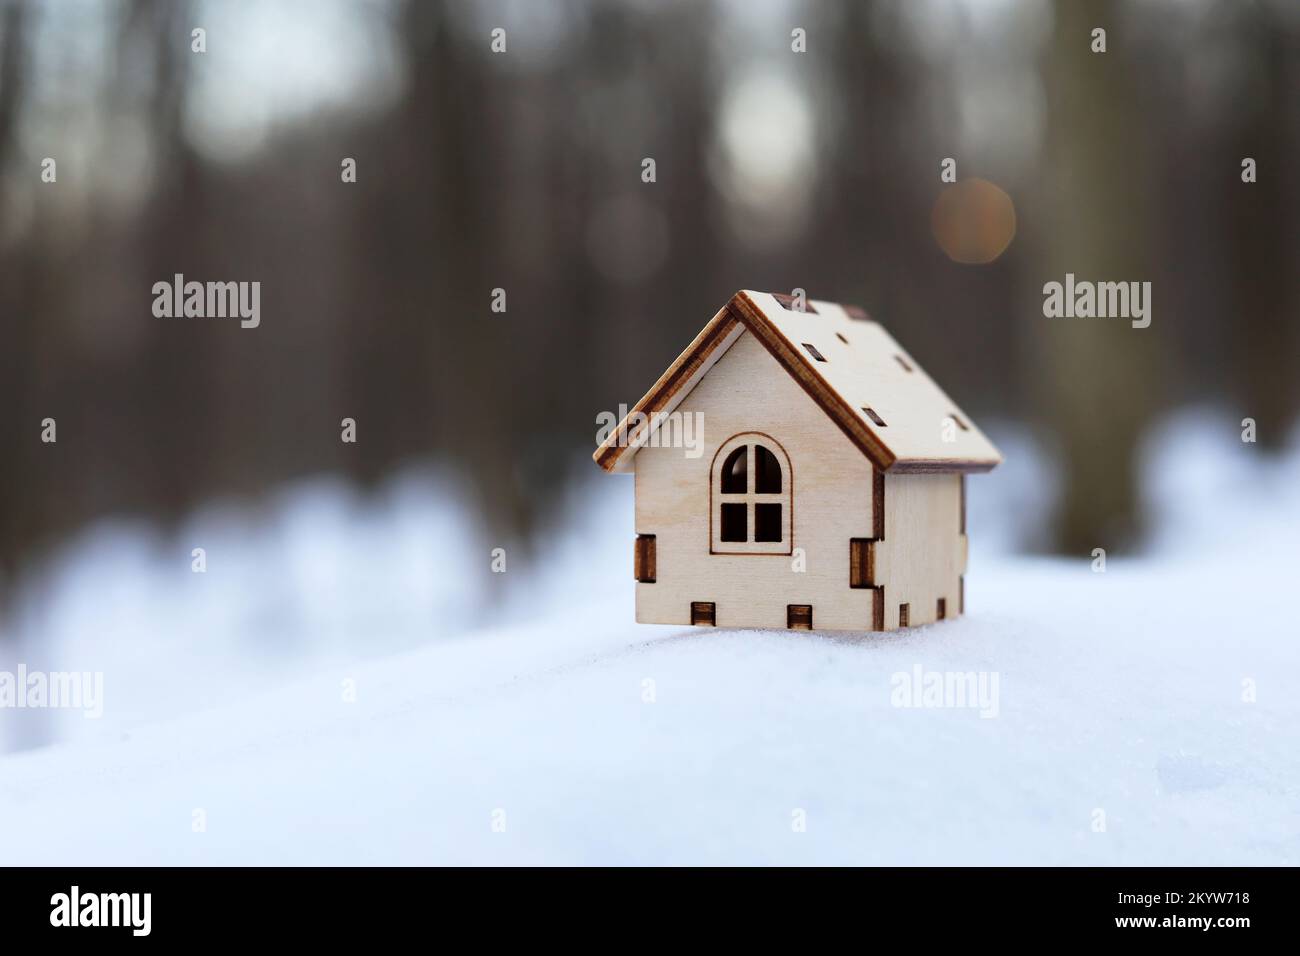 Modèle de maison en bois dans une neige sur fond de forêt d'hiver.Concept de chalet de campagne, immobilier dans zone écologiquement propre Banque D'Images